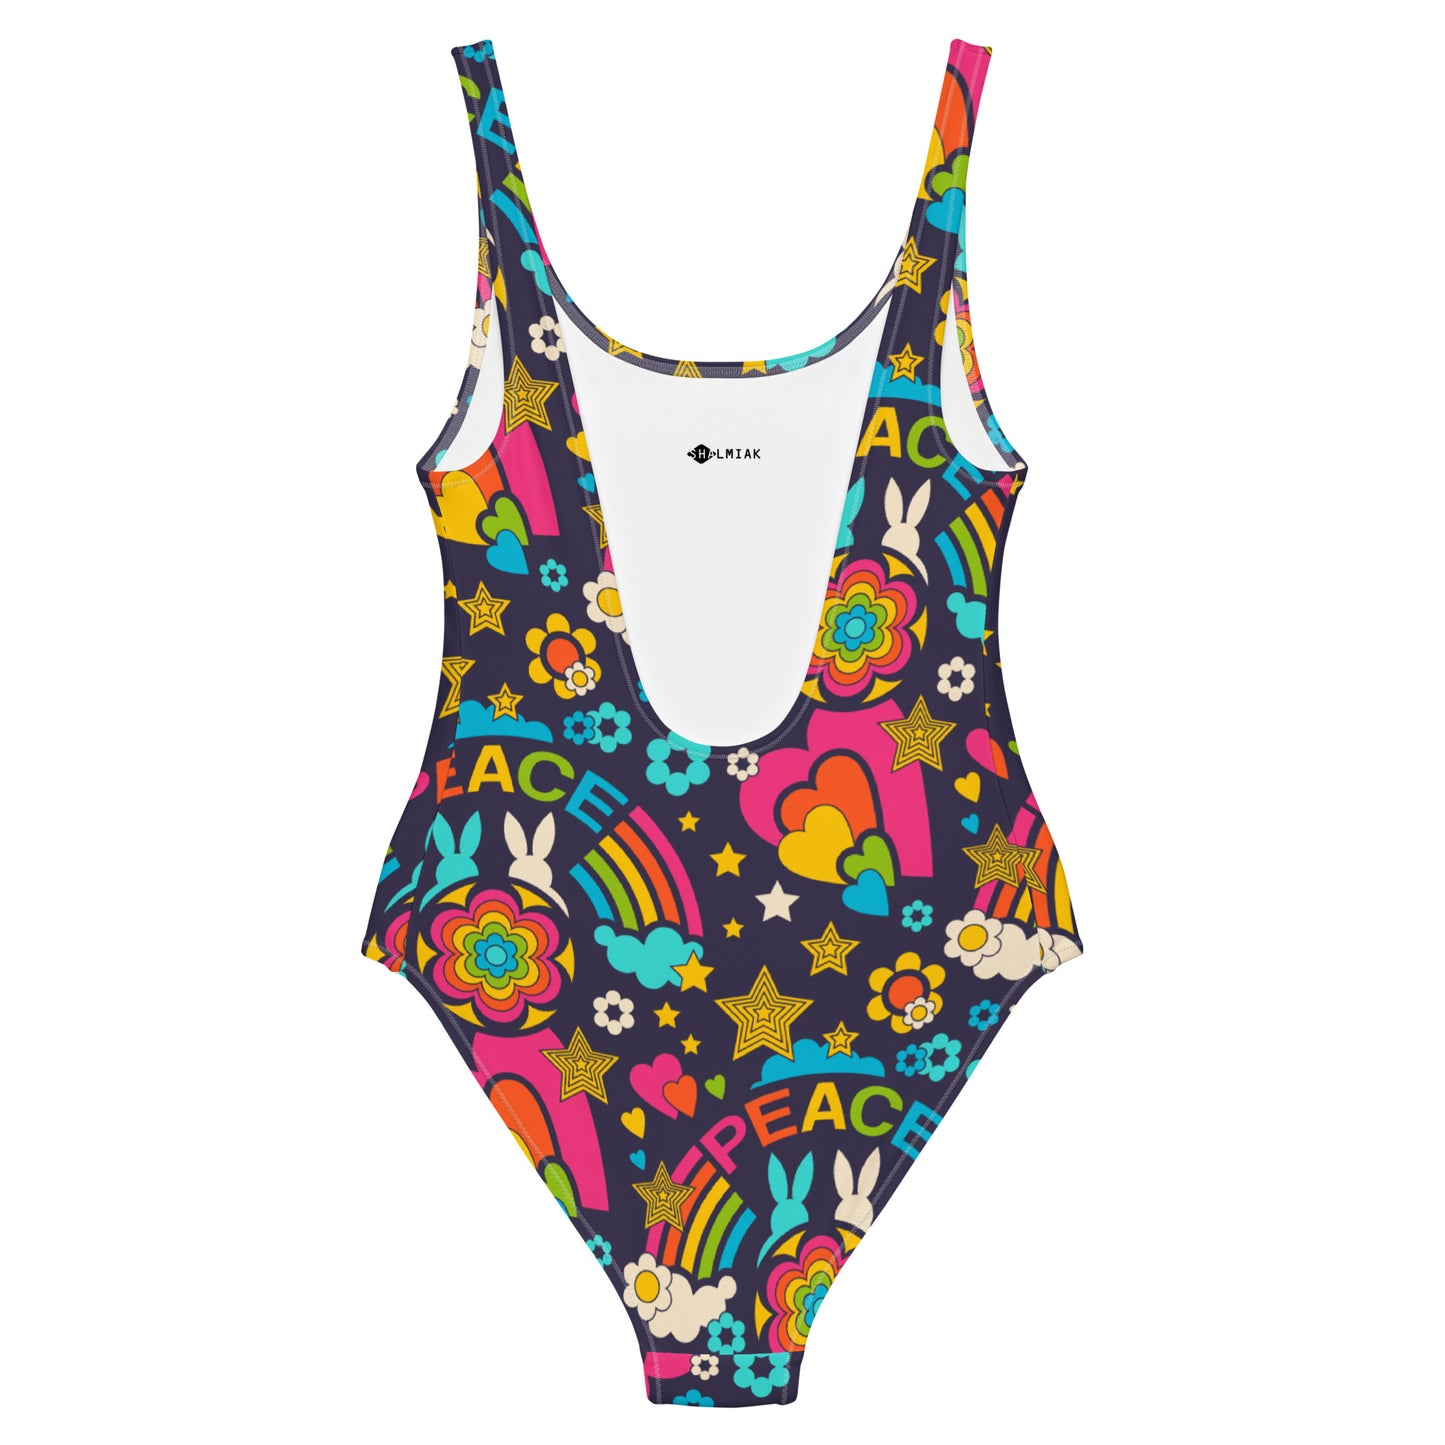 BUNNY PEACE darkblue - One-Piece Swimsuit